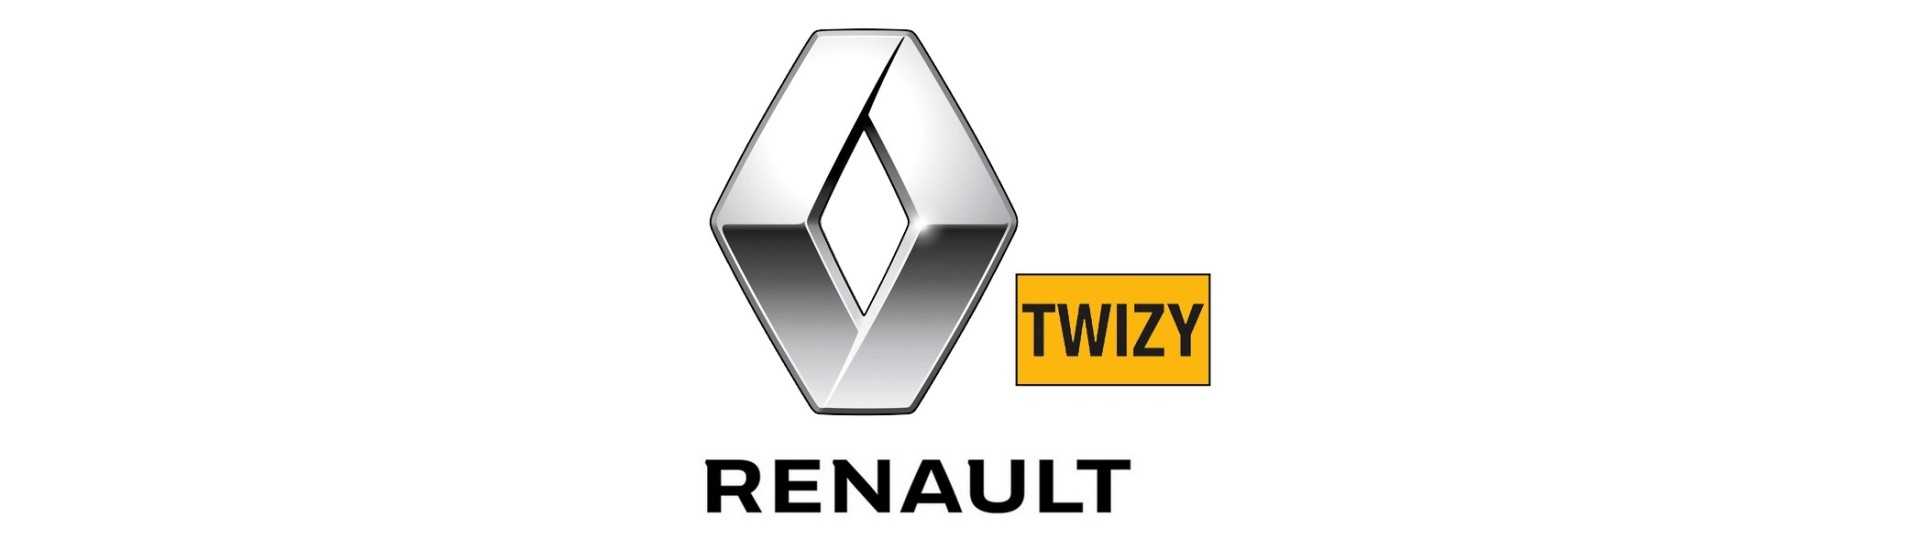 Stop-Kontakt zum besten Preis für Auto ohne Lizenz Renault